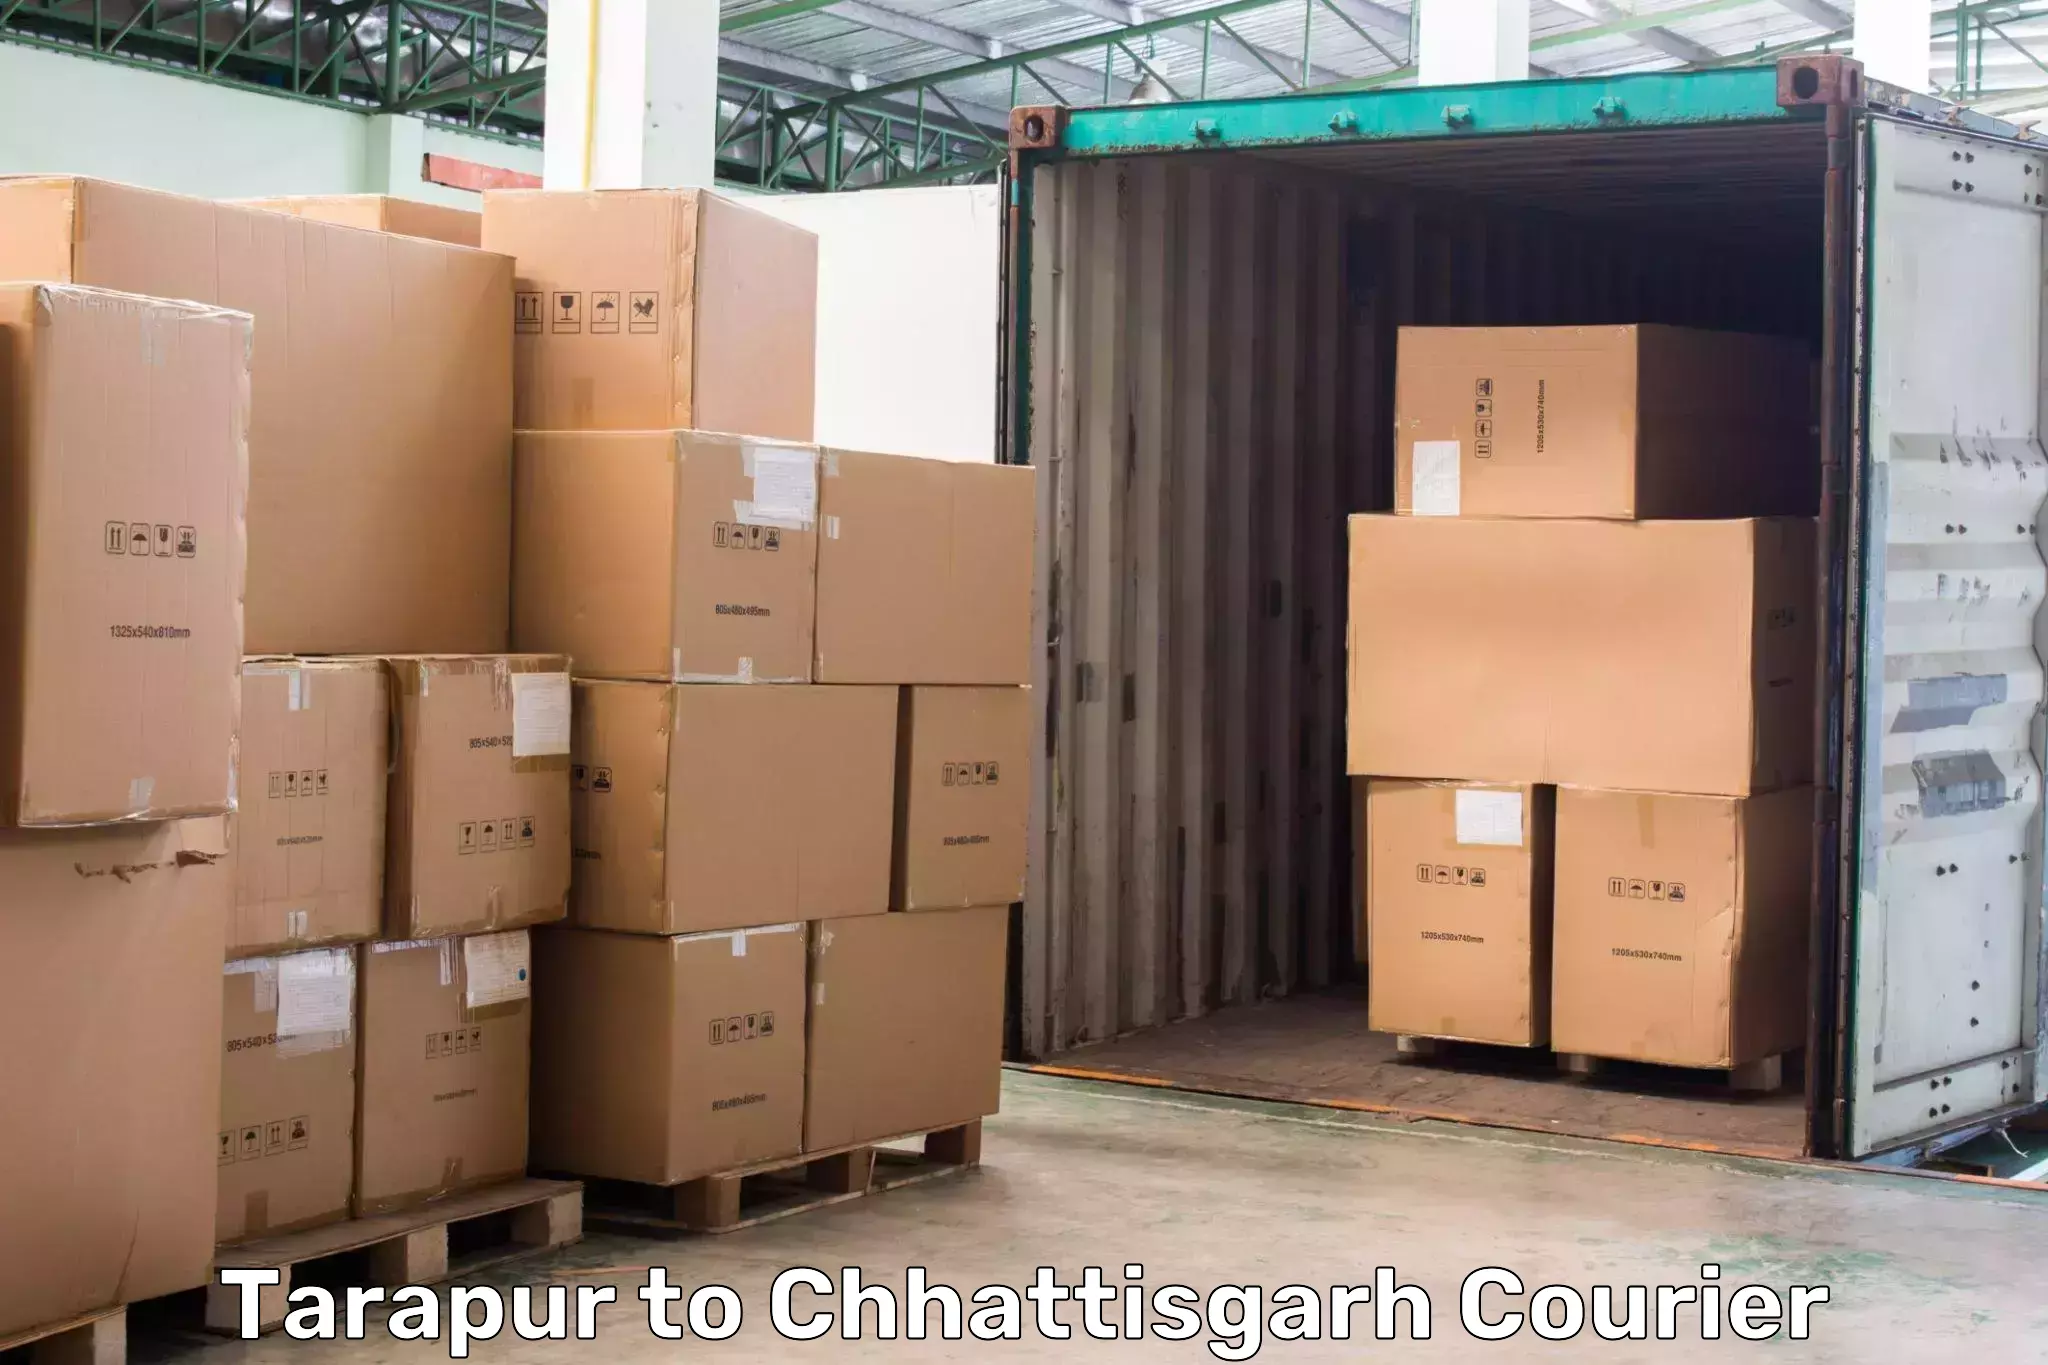 Online courier booking Tarapur to Chhattisgarh